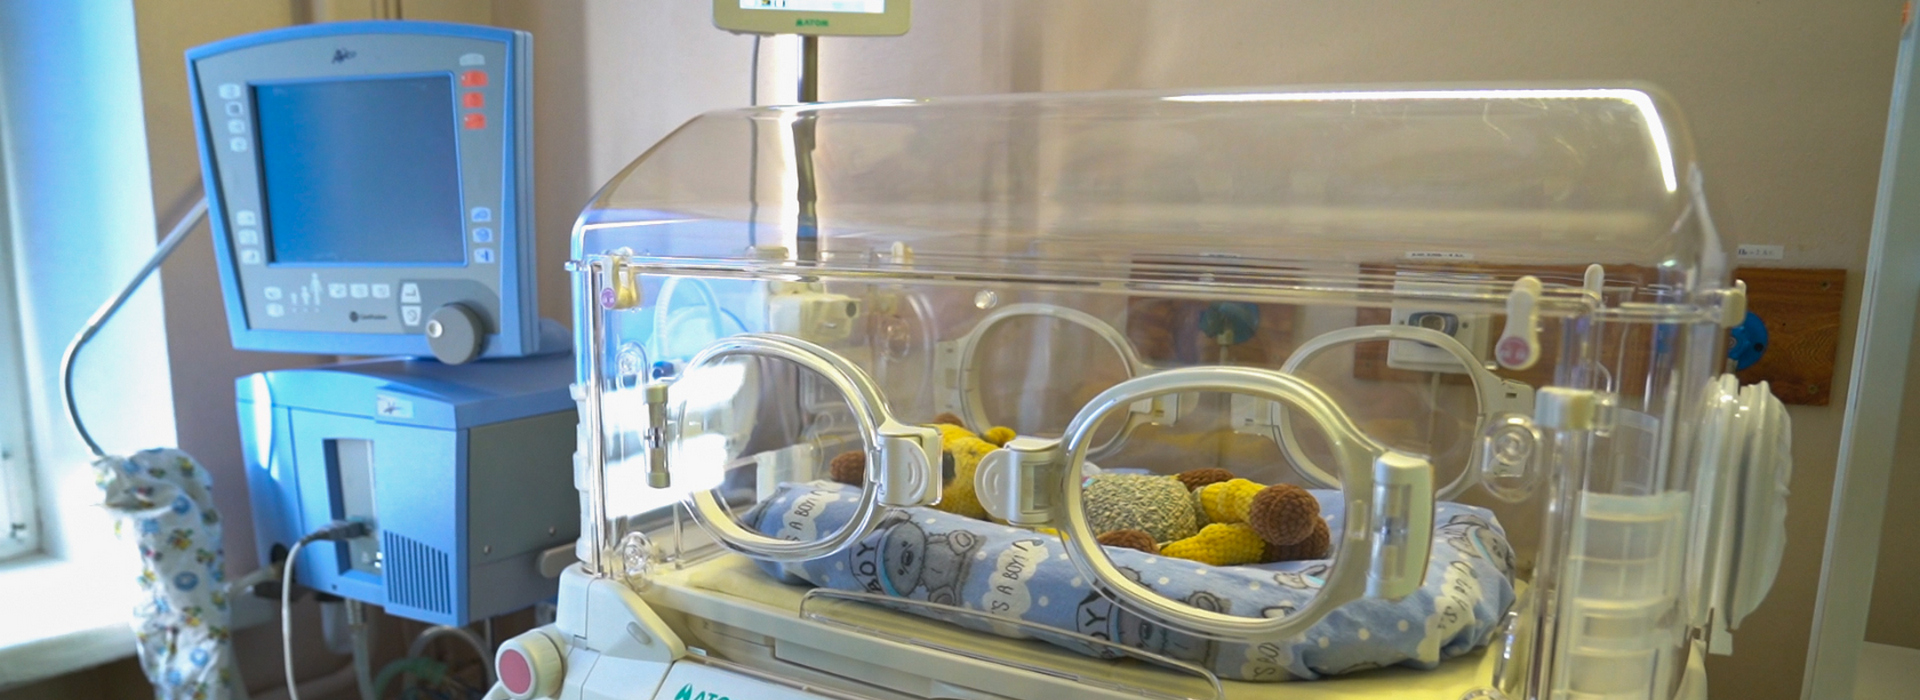 Mondelēz Ukraine Handed Over 17 Neonatal Incubators for Medical Institutions in 9 Cities of Ukraine